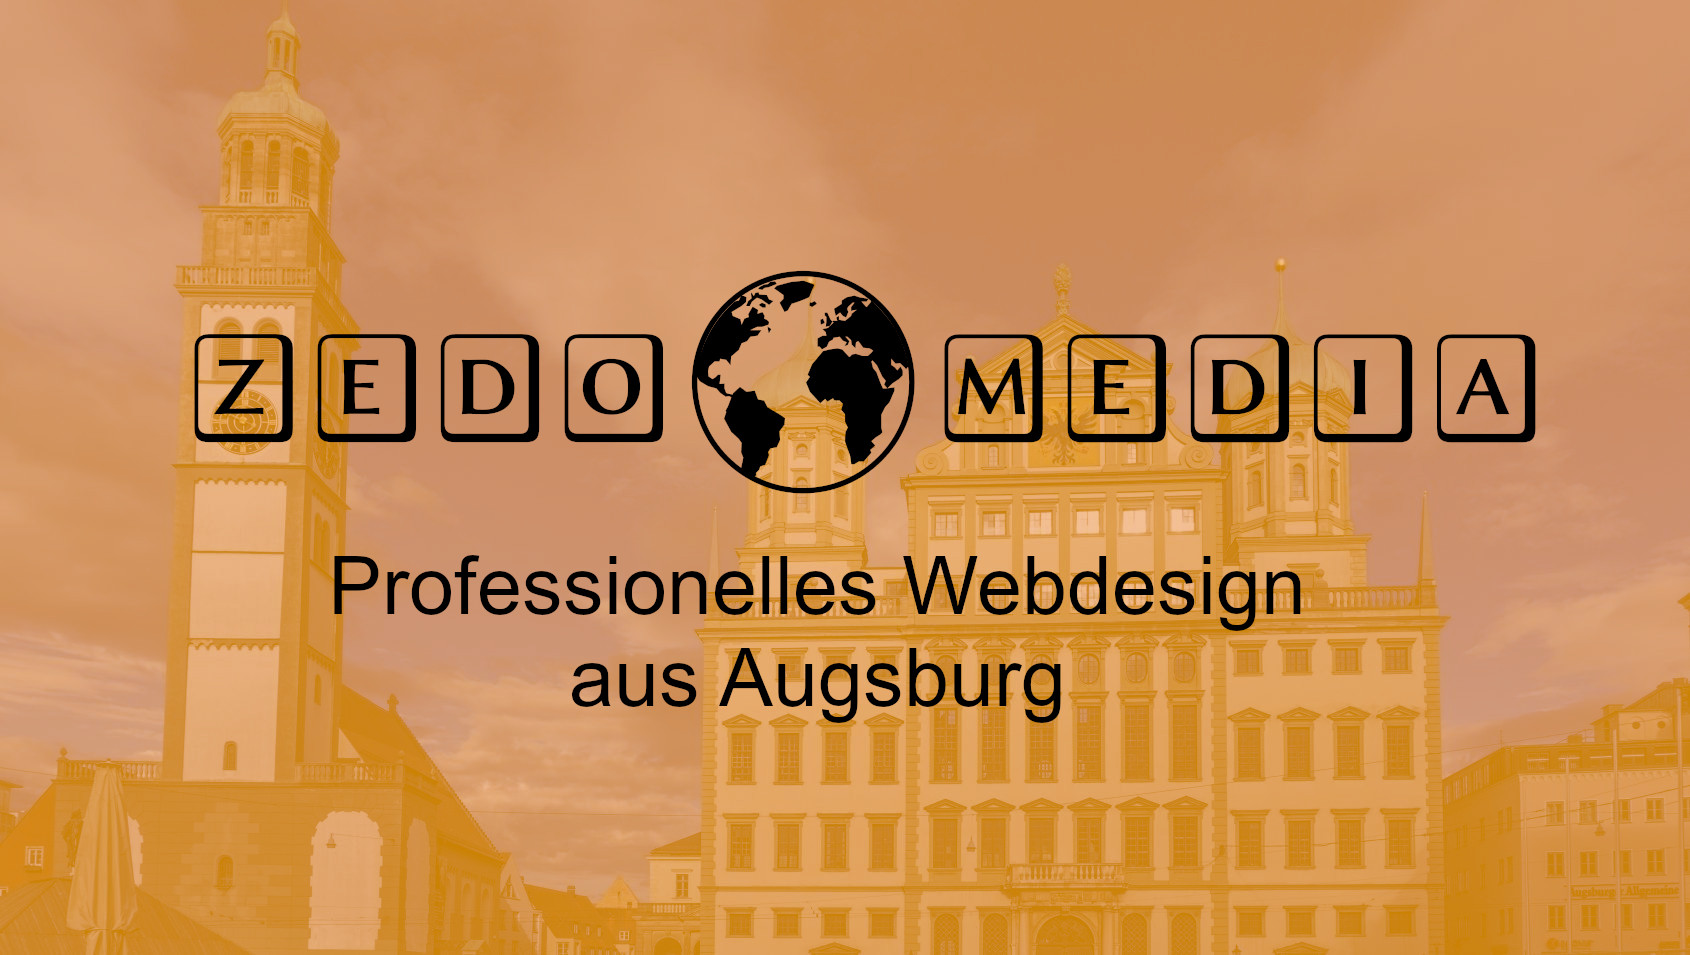 Zedo Media ® - Webdesign aus Augsburg